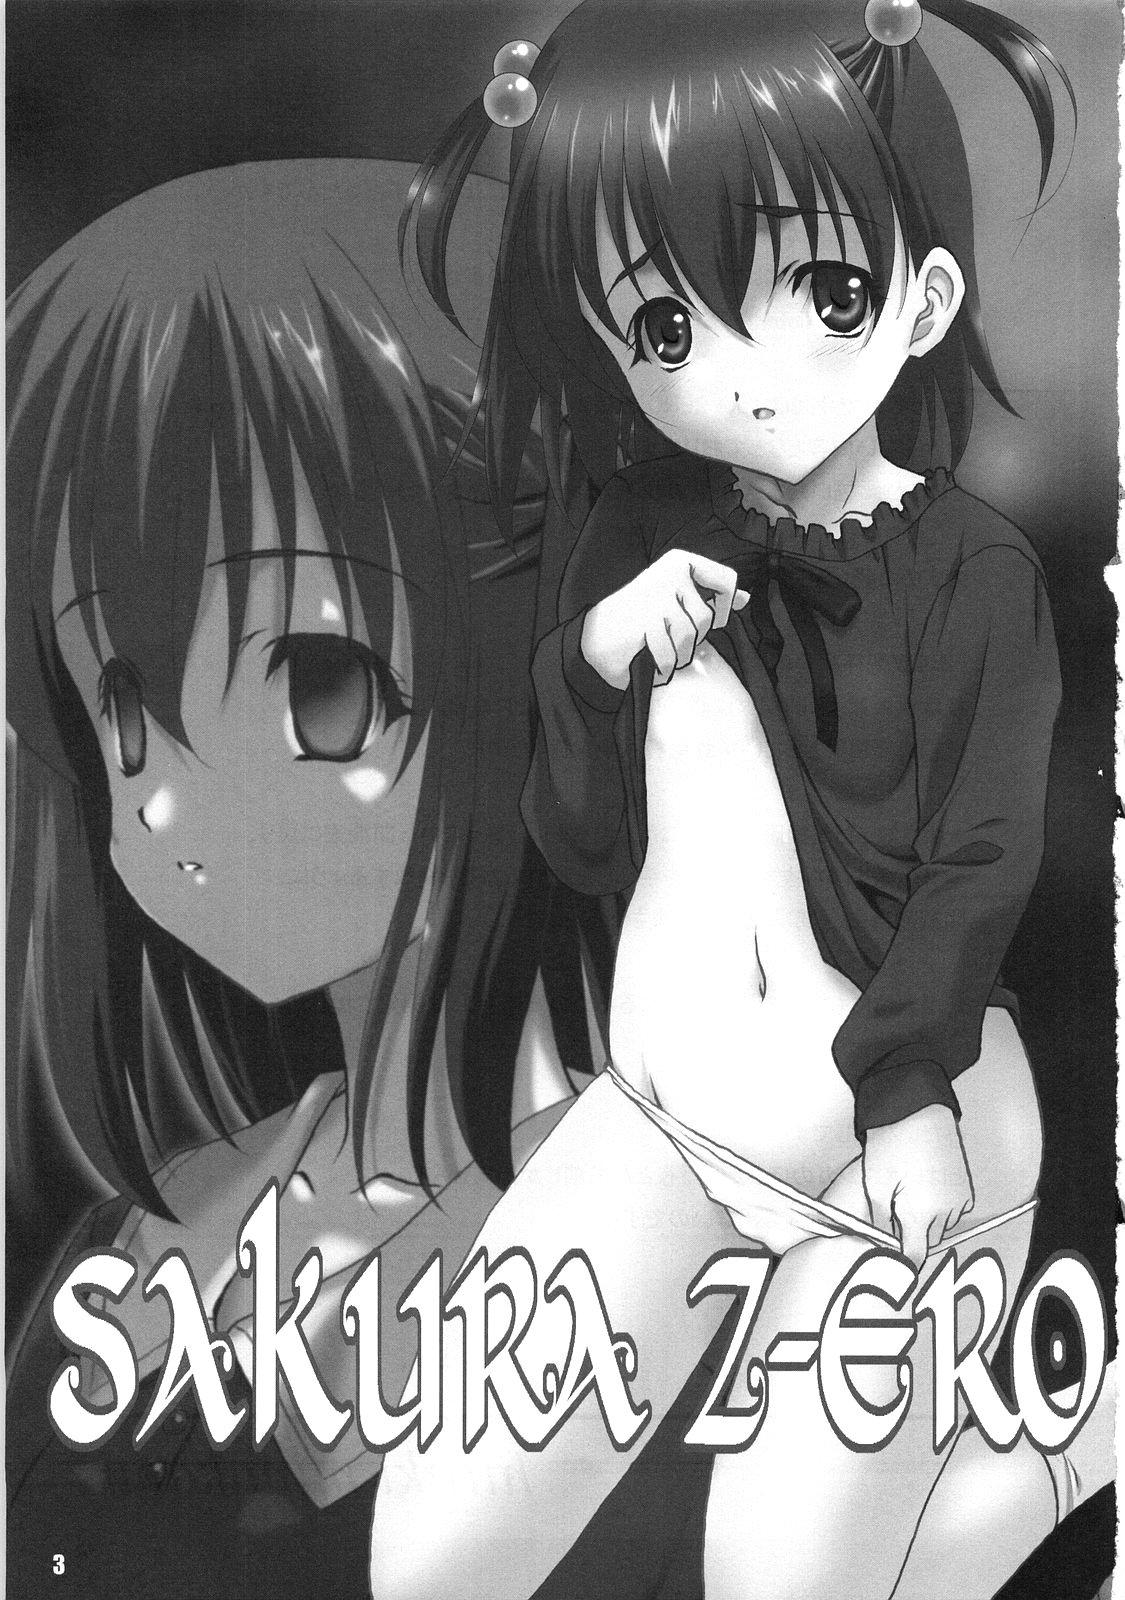 SAKURA Z-ERO EXtra stage vol. 22 1